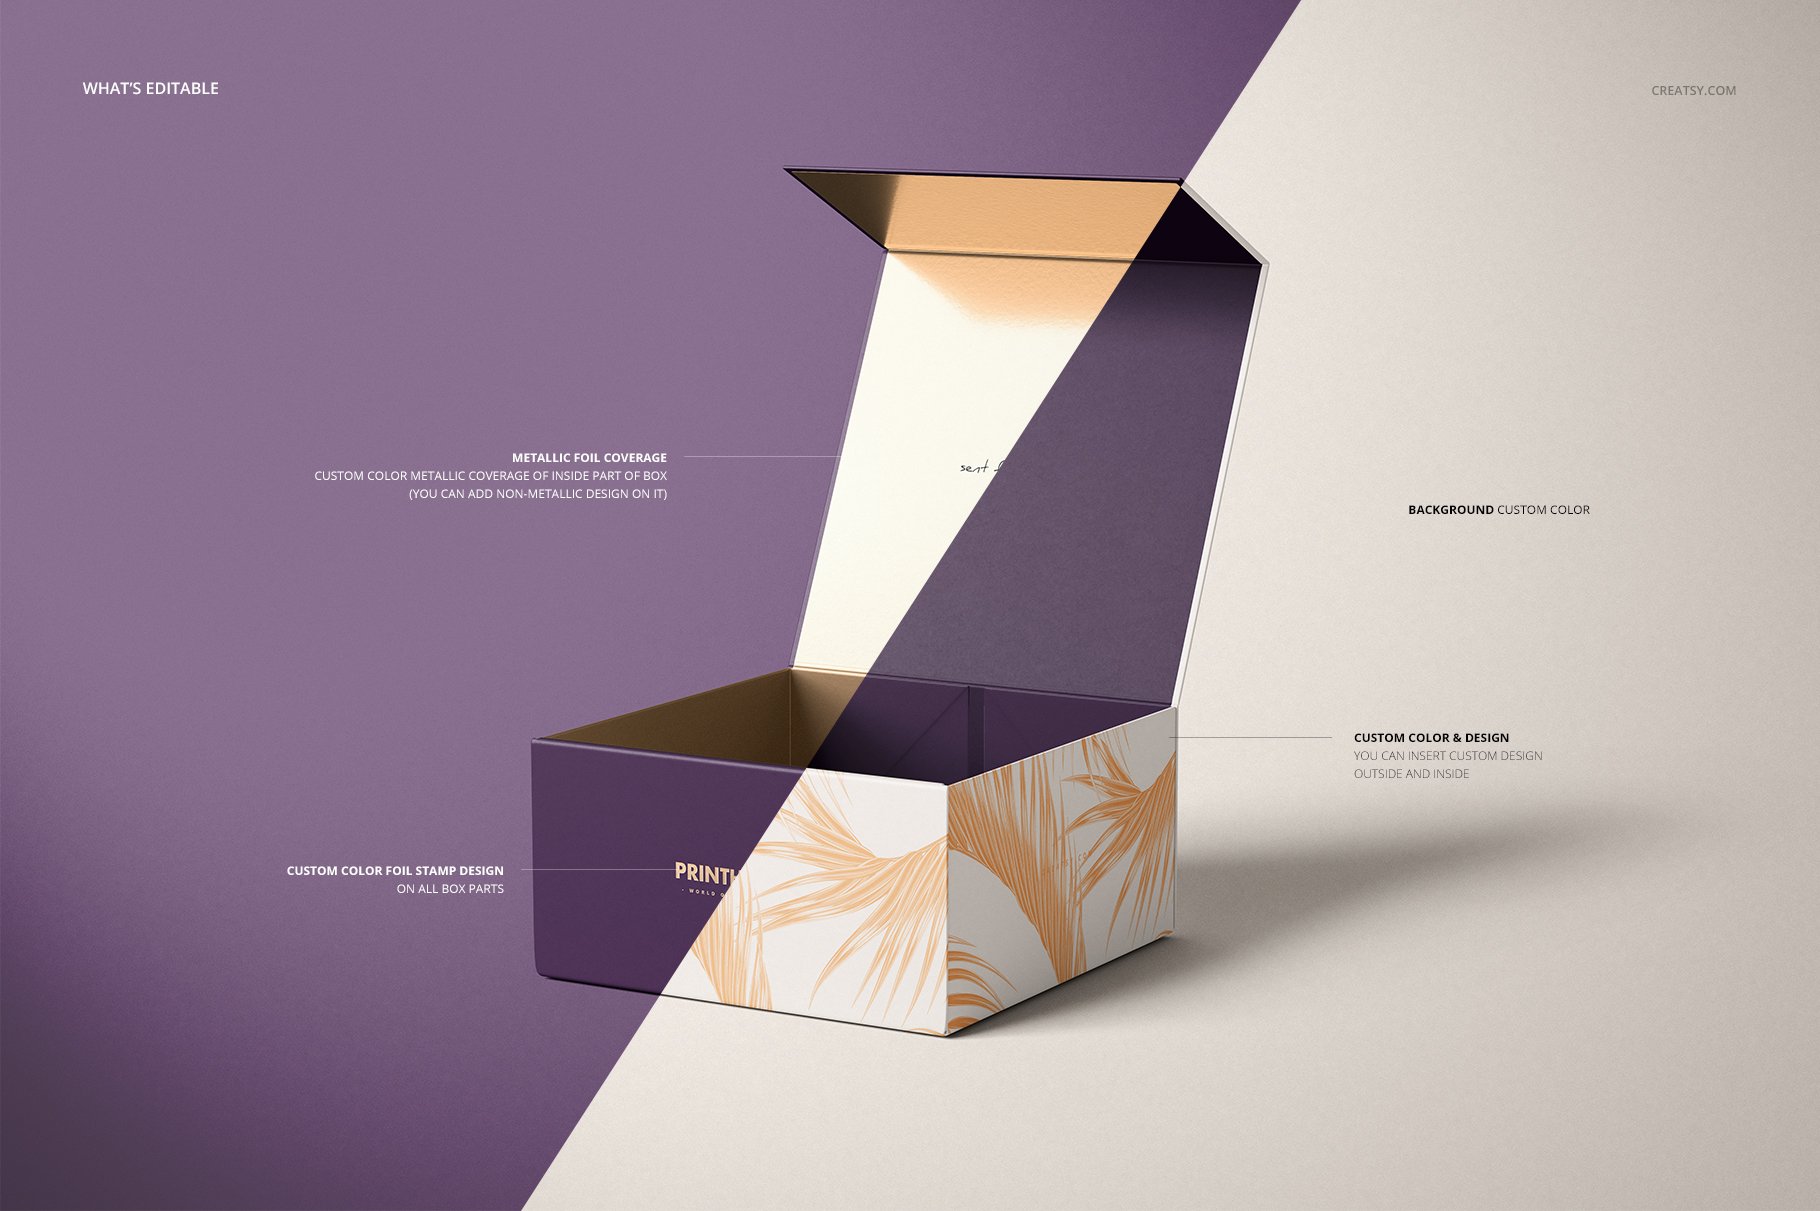 磁性产品礼品包装纸盒设计展示样机